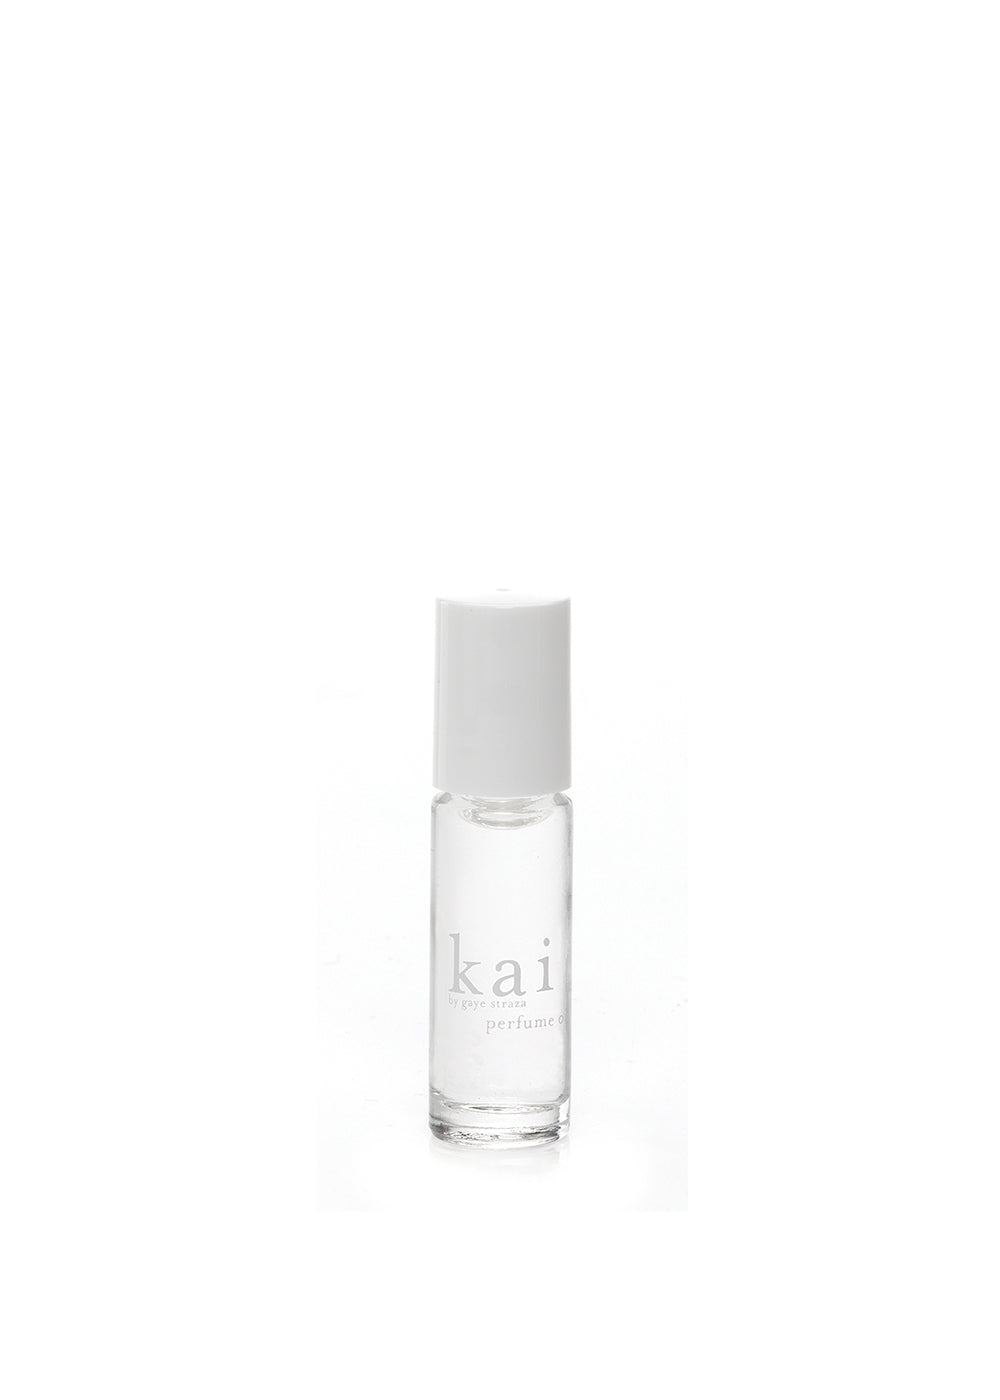 Kai fragrance Perfume oil